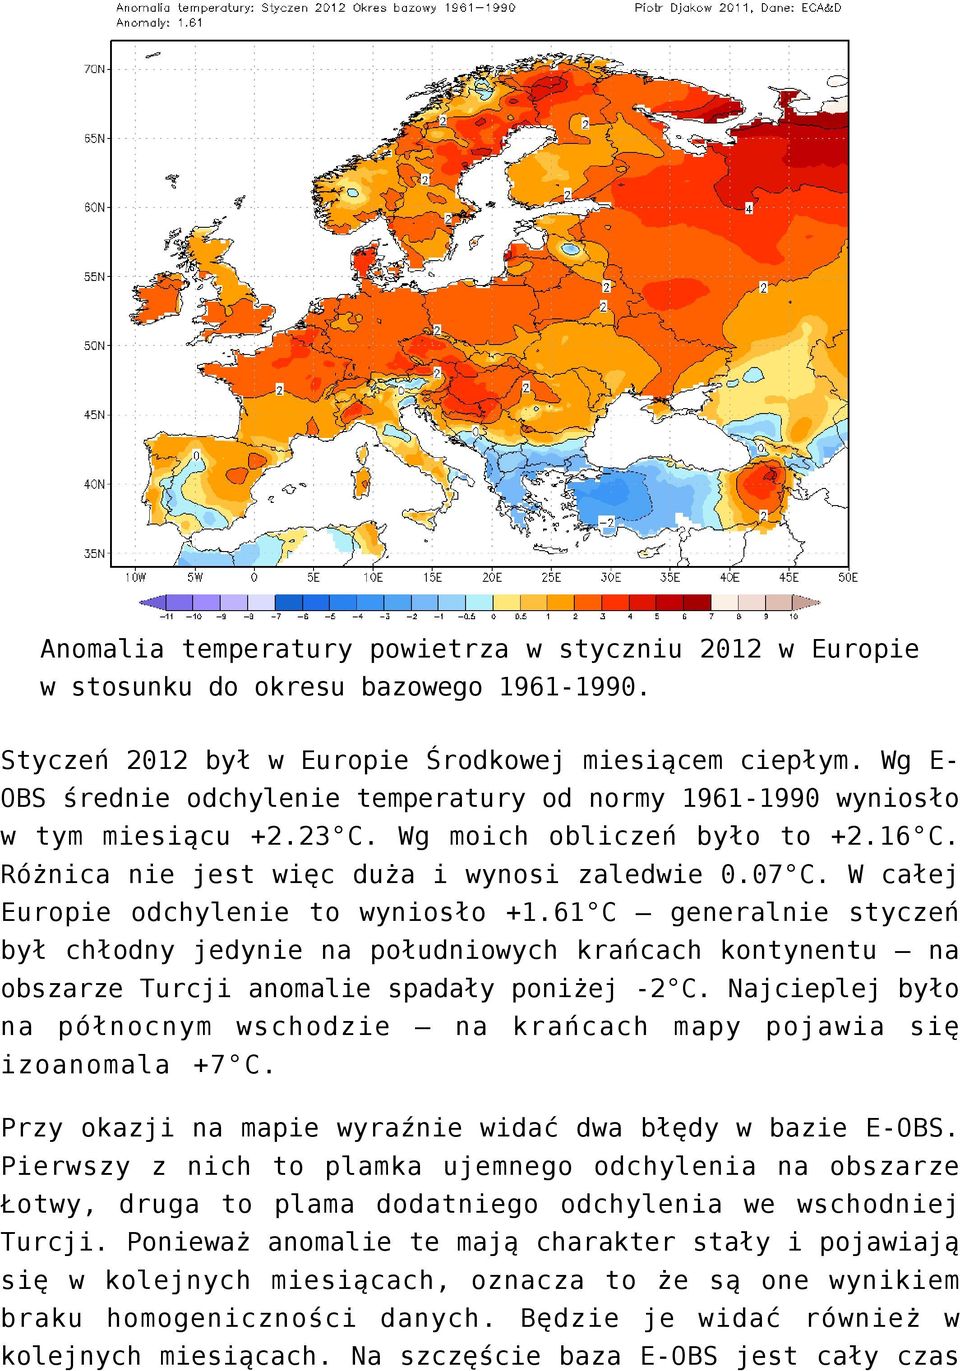 W całej Europie odchylenie to wyniosło +1.61 C generalnie styczeń był chłodny jedynie na południowych krańcach kontynentu na obszarze Turcji anomalie spadały poniżej -2 C.